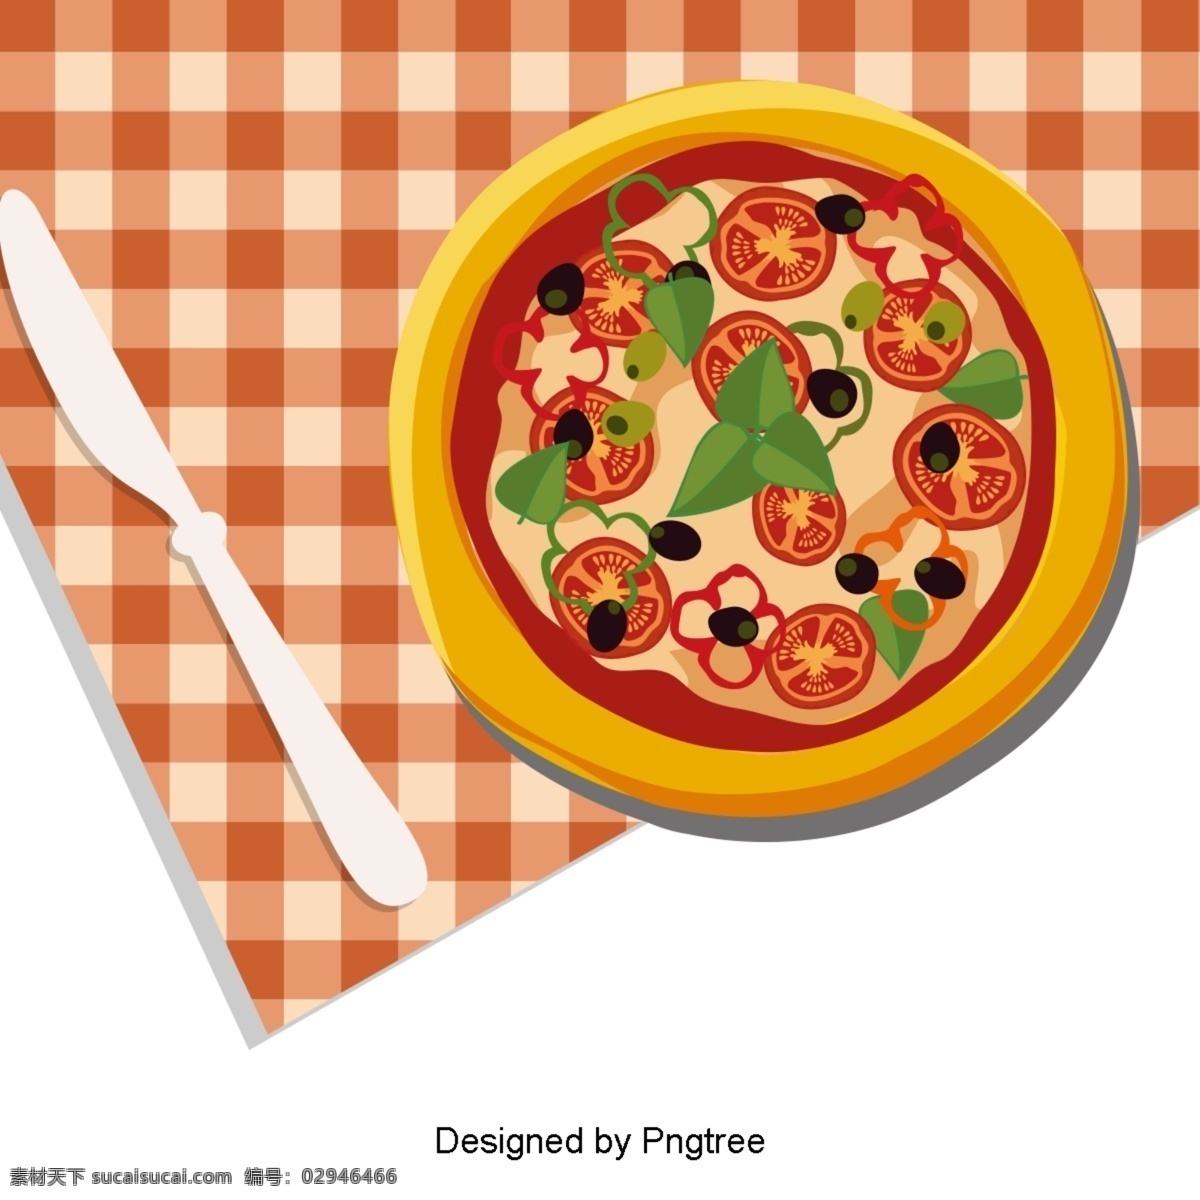 漂亮 的卡 通 可爱 手绘 美味 西餐 比萨饼 外卖 卡通 创意 食物 披萨 塔克